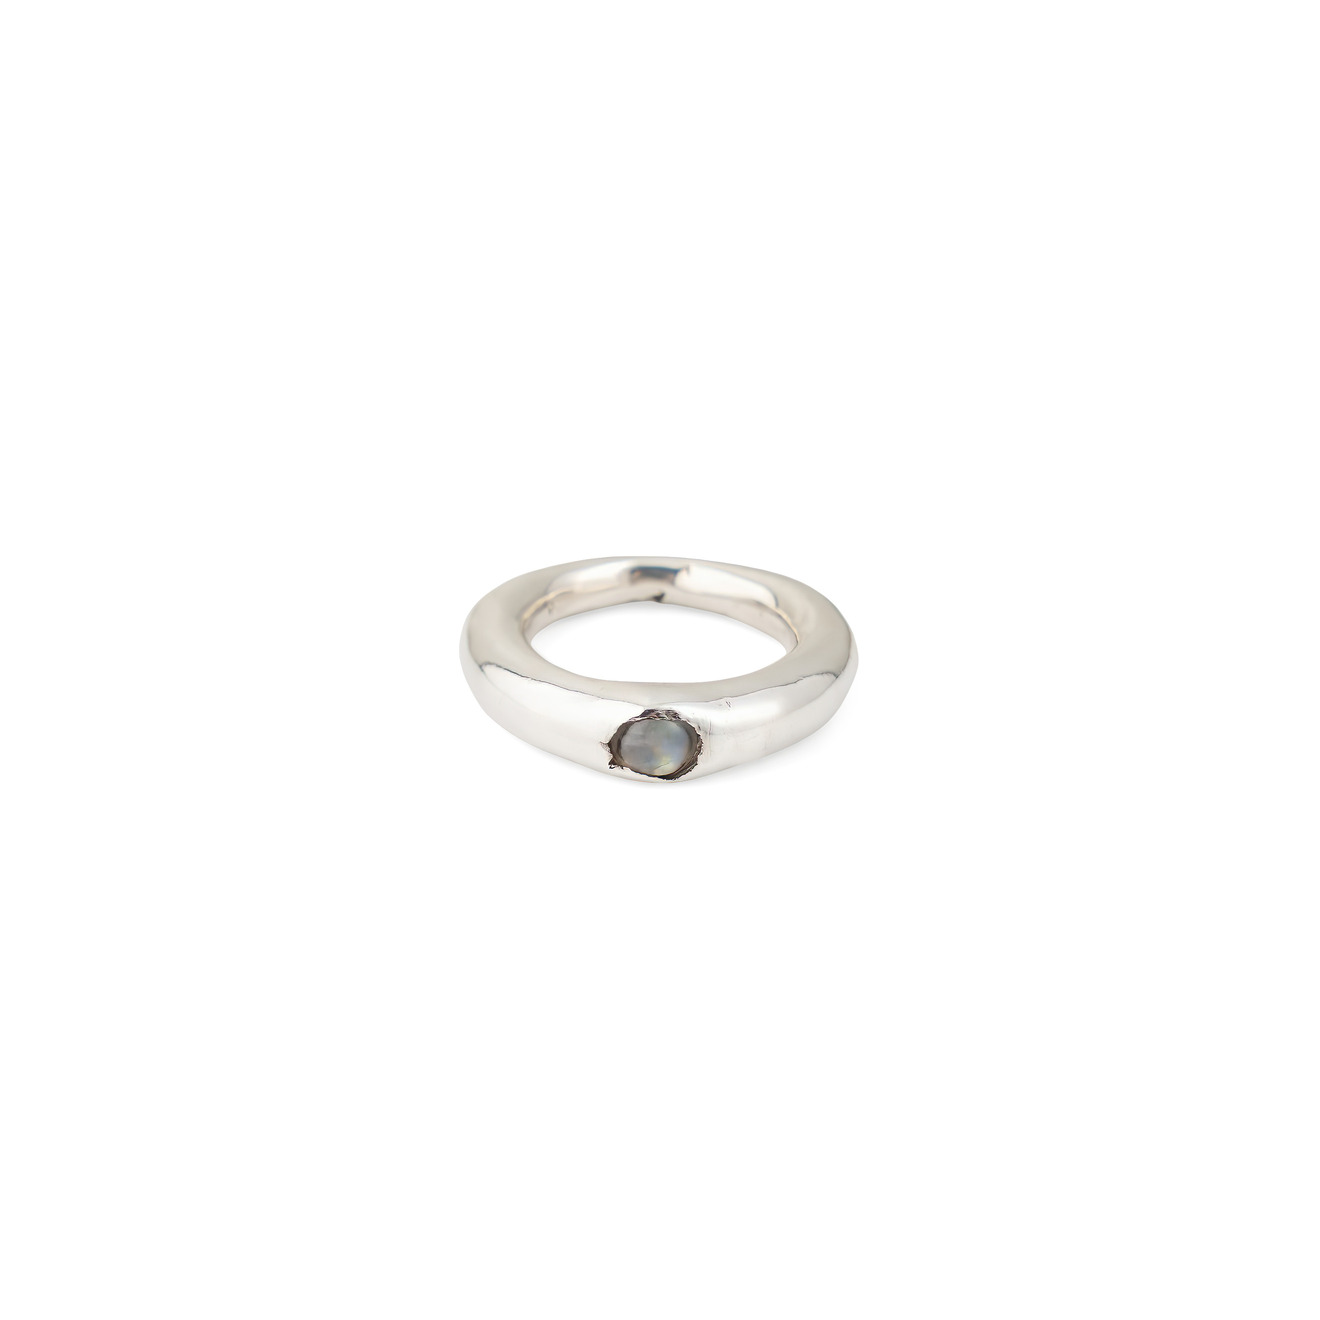 PHOSPHOR Кольцо из серебра LVX с лунным камнем phosphor фактурное кольцо из серебра ccs